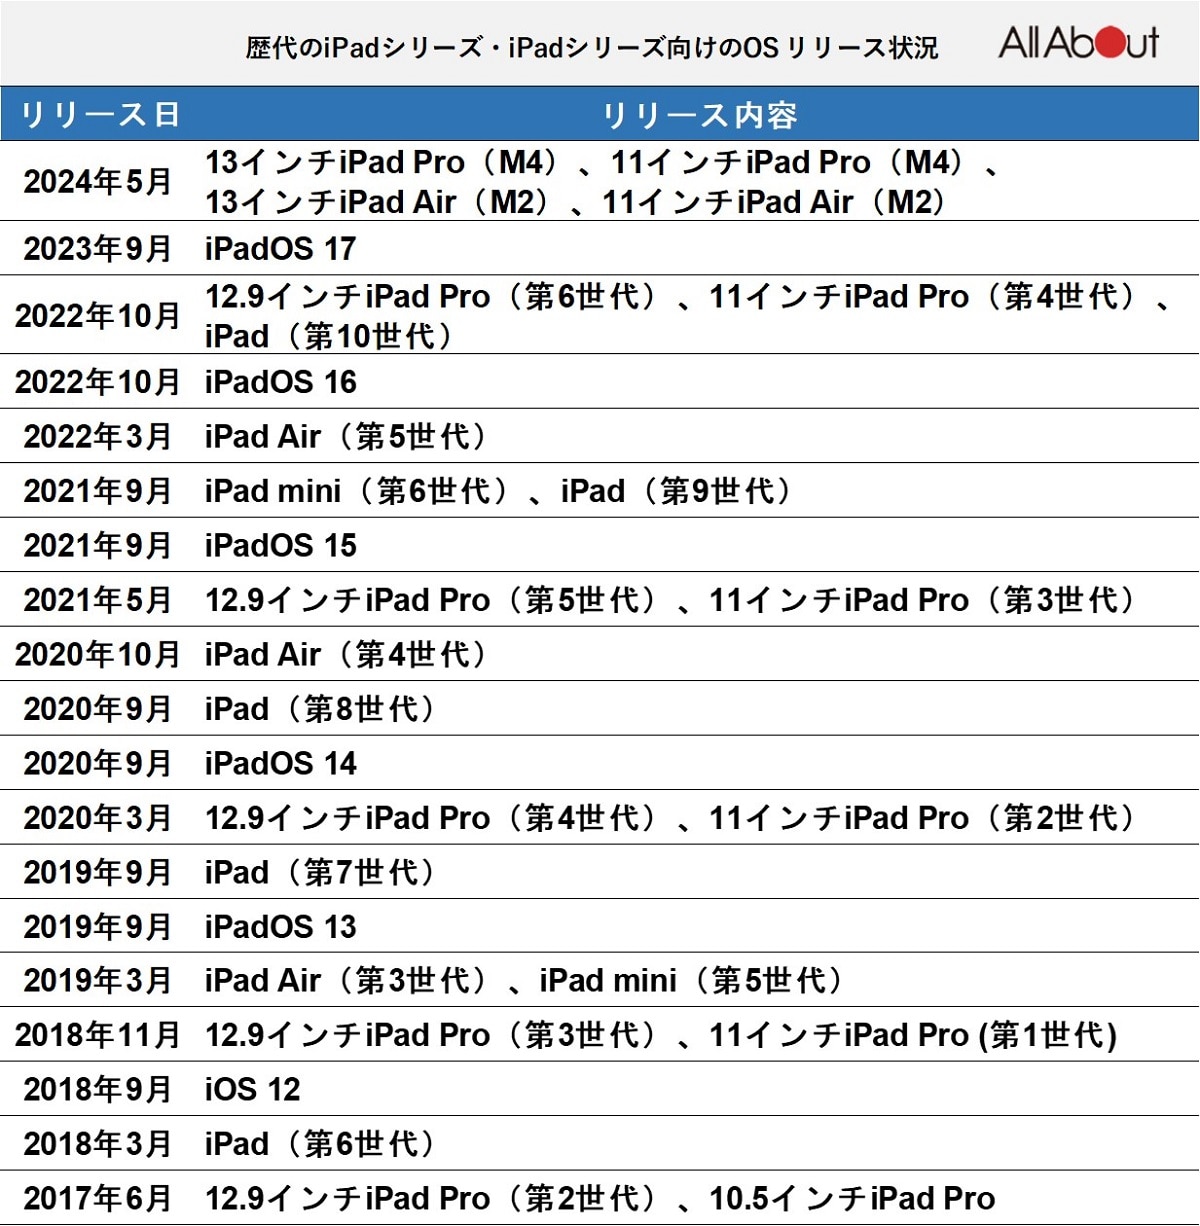 歴代のiPadシリーズ・iPadシリーズ向けのOSのリリース日